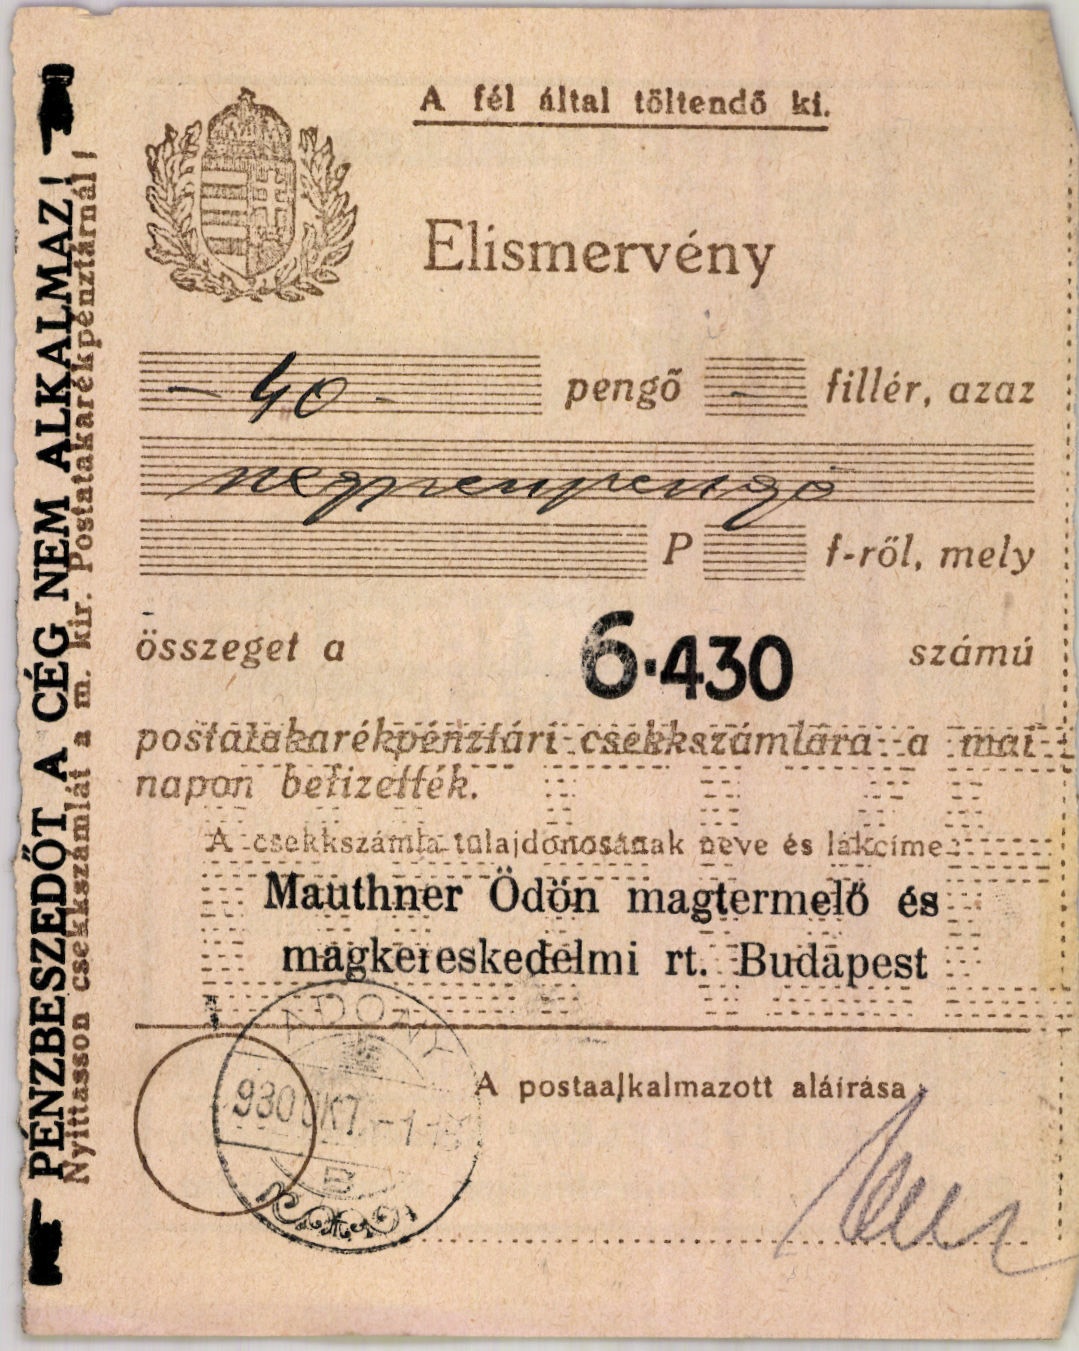 Mauthner Ödön magtermelő és magkereskedelmi r. t. (Magyar Kereskedelmi és Vendéglátóipari Múzeum CC BY-NC-SA)